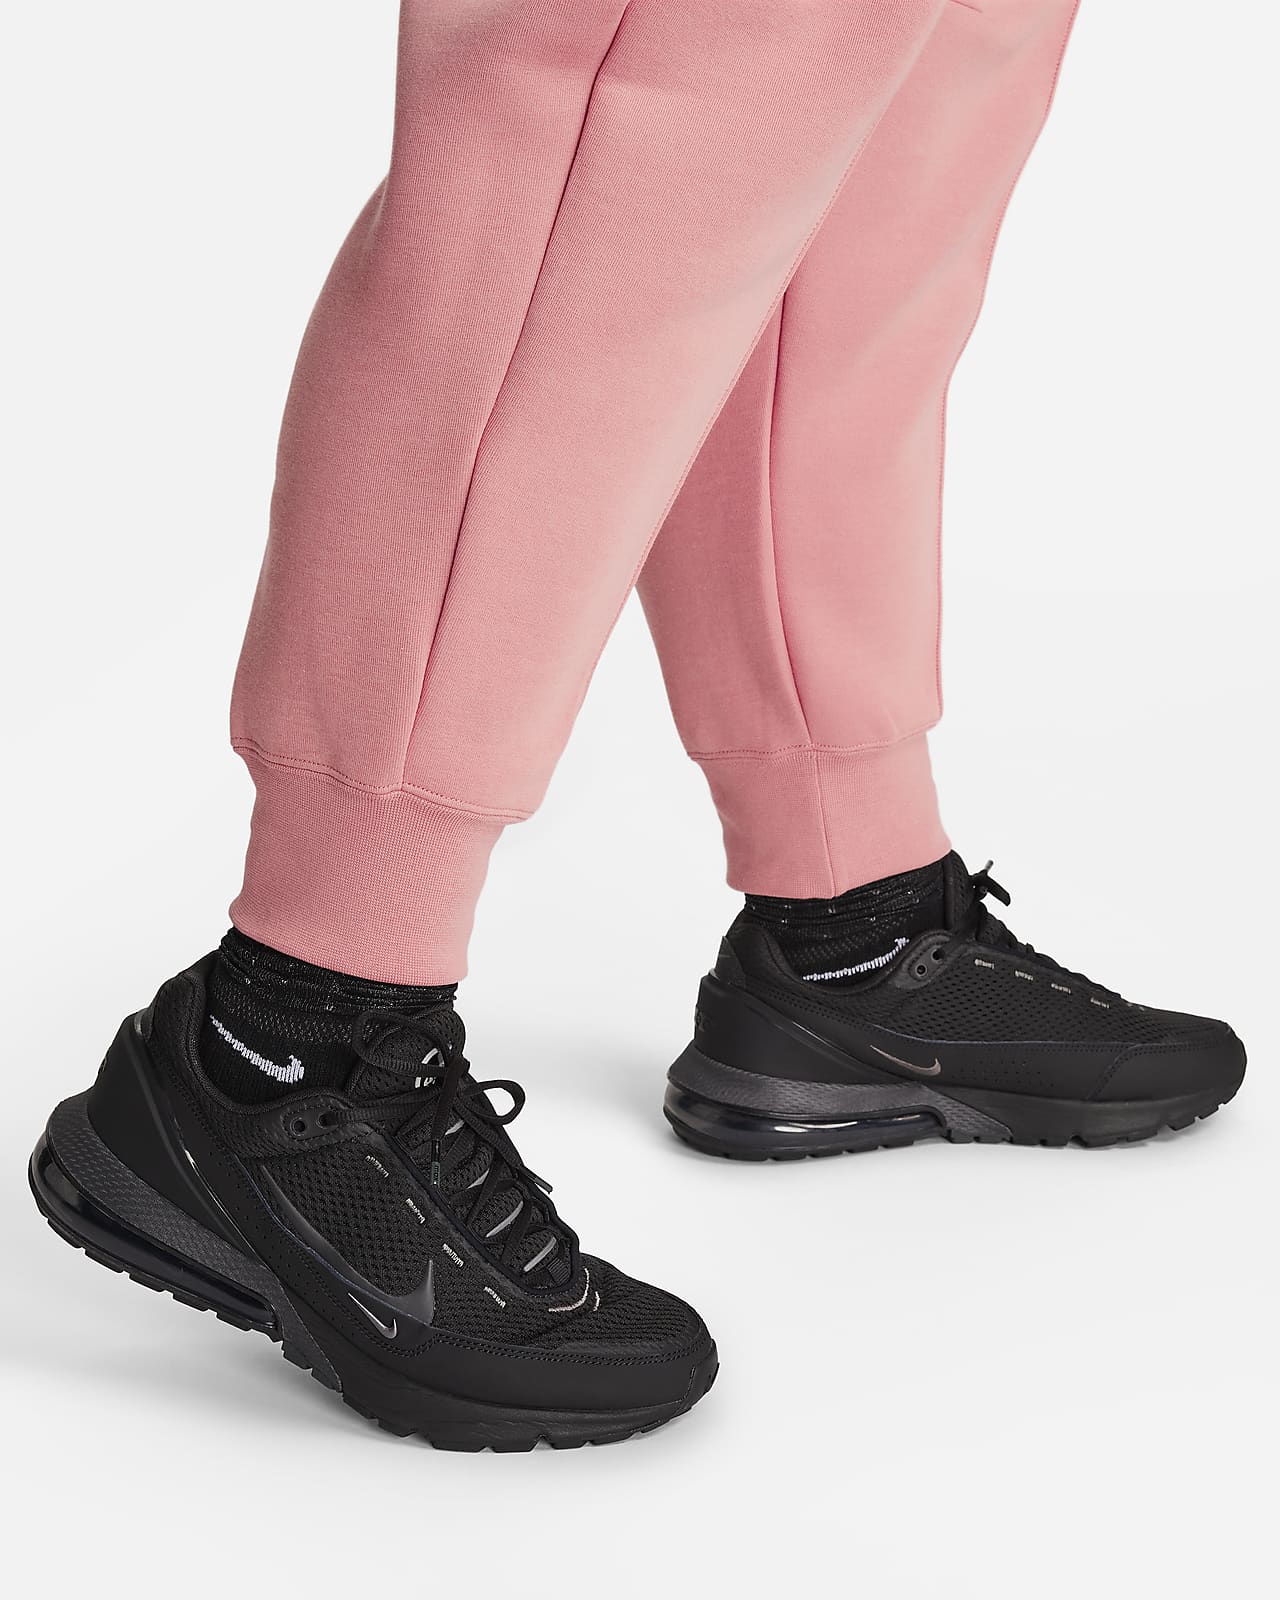 Nike Sportswear Stardust Fleece Women's Pink Sweatpants